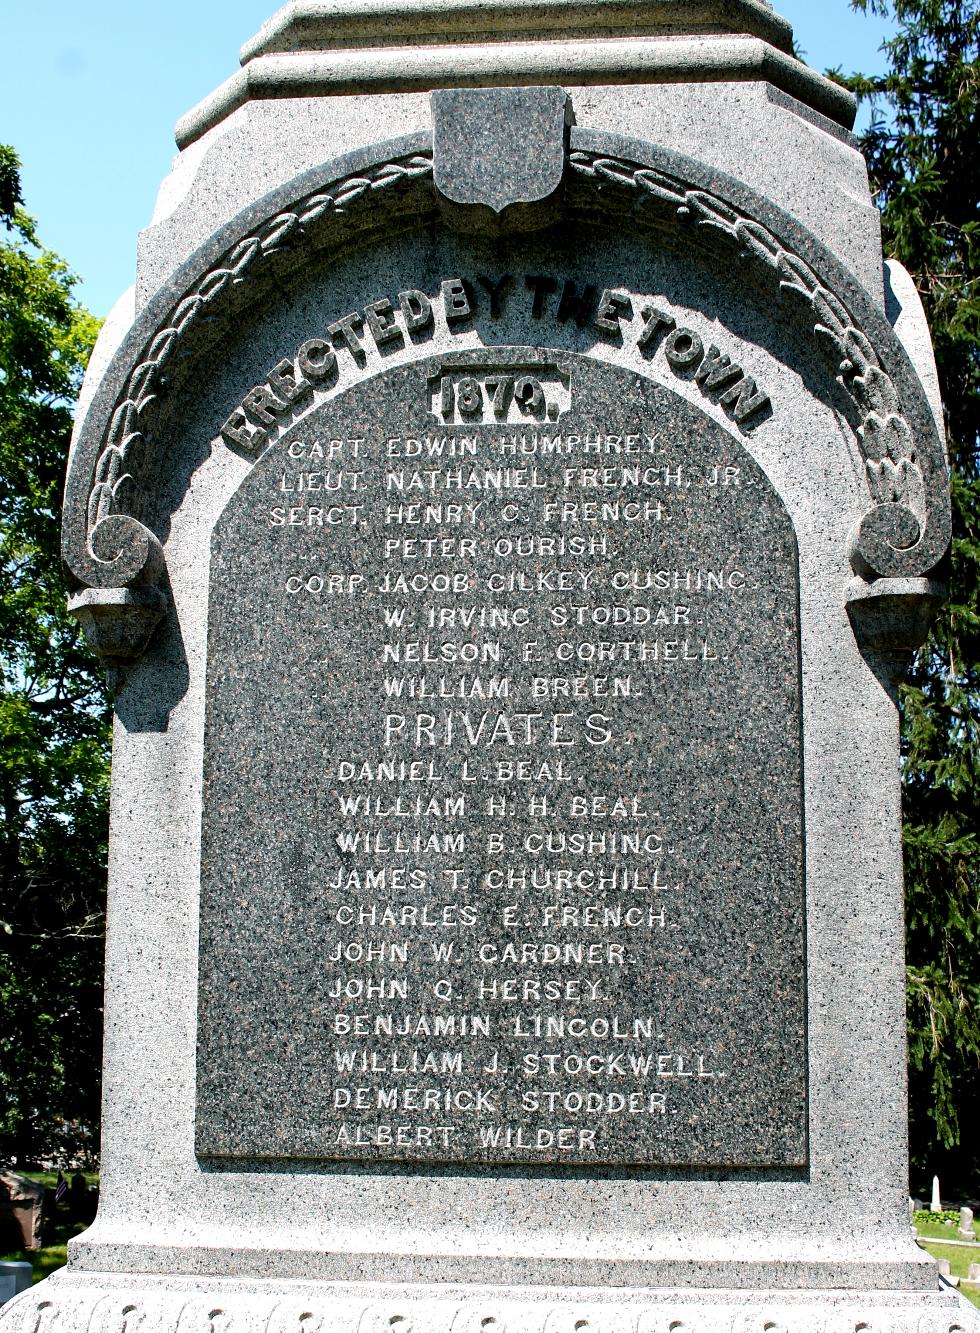 Hingham Massachusetts Civil War Memorial